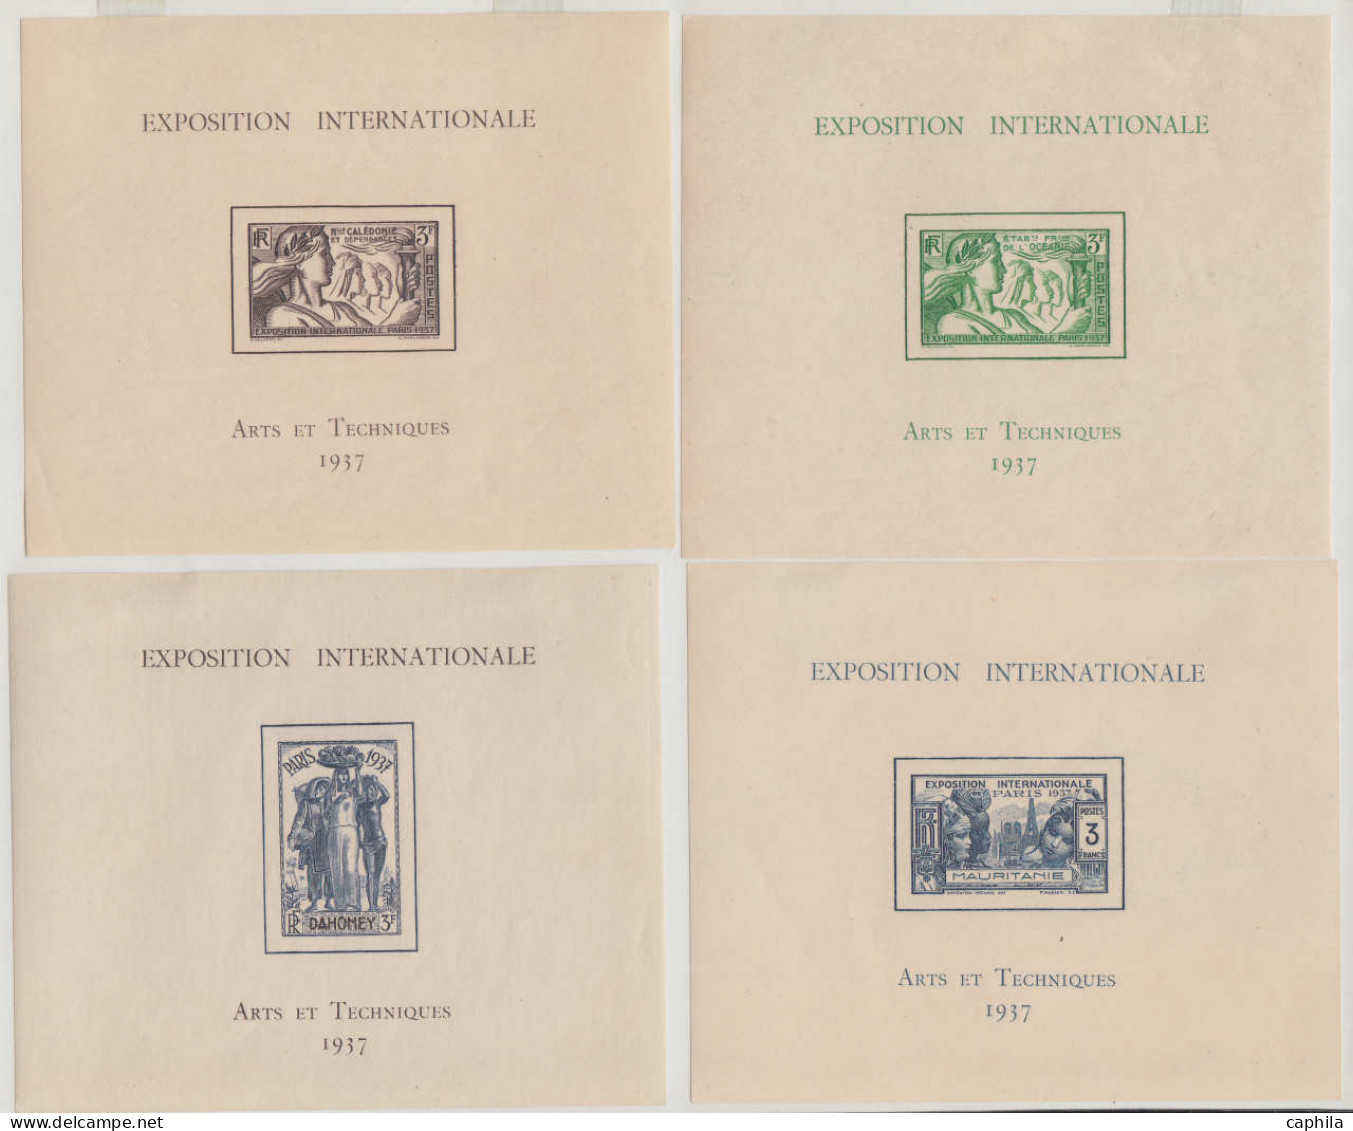 * COLONIES SERIES - Poste - 1937, Exposition internationale de Paris, complet poste + Bf